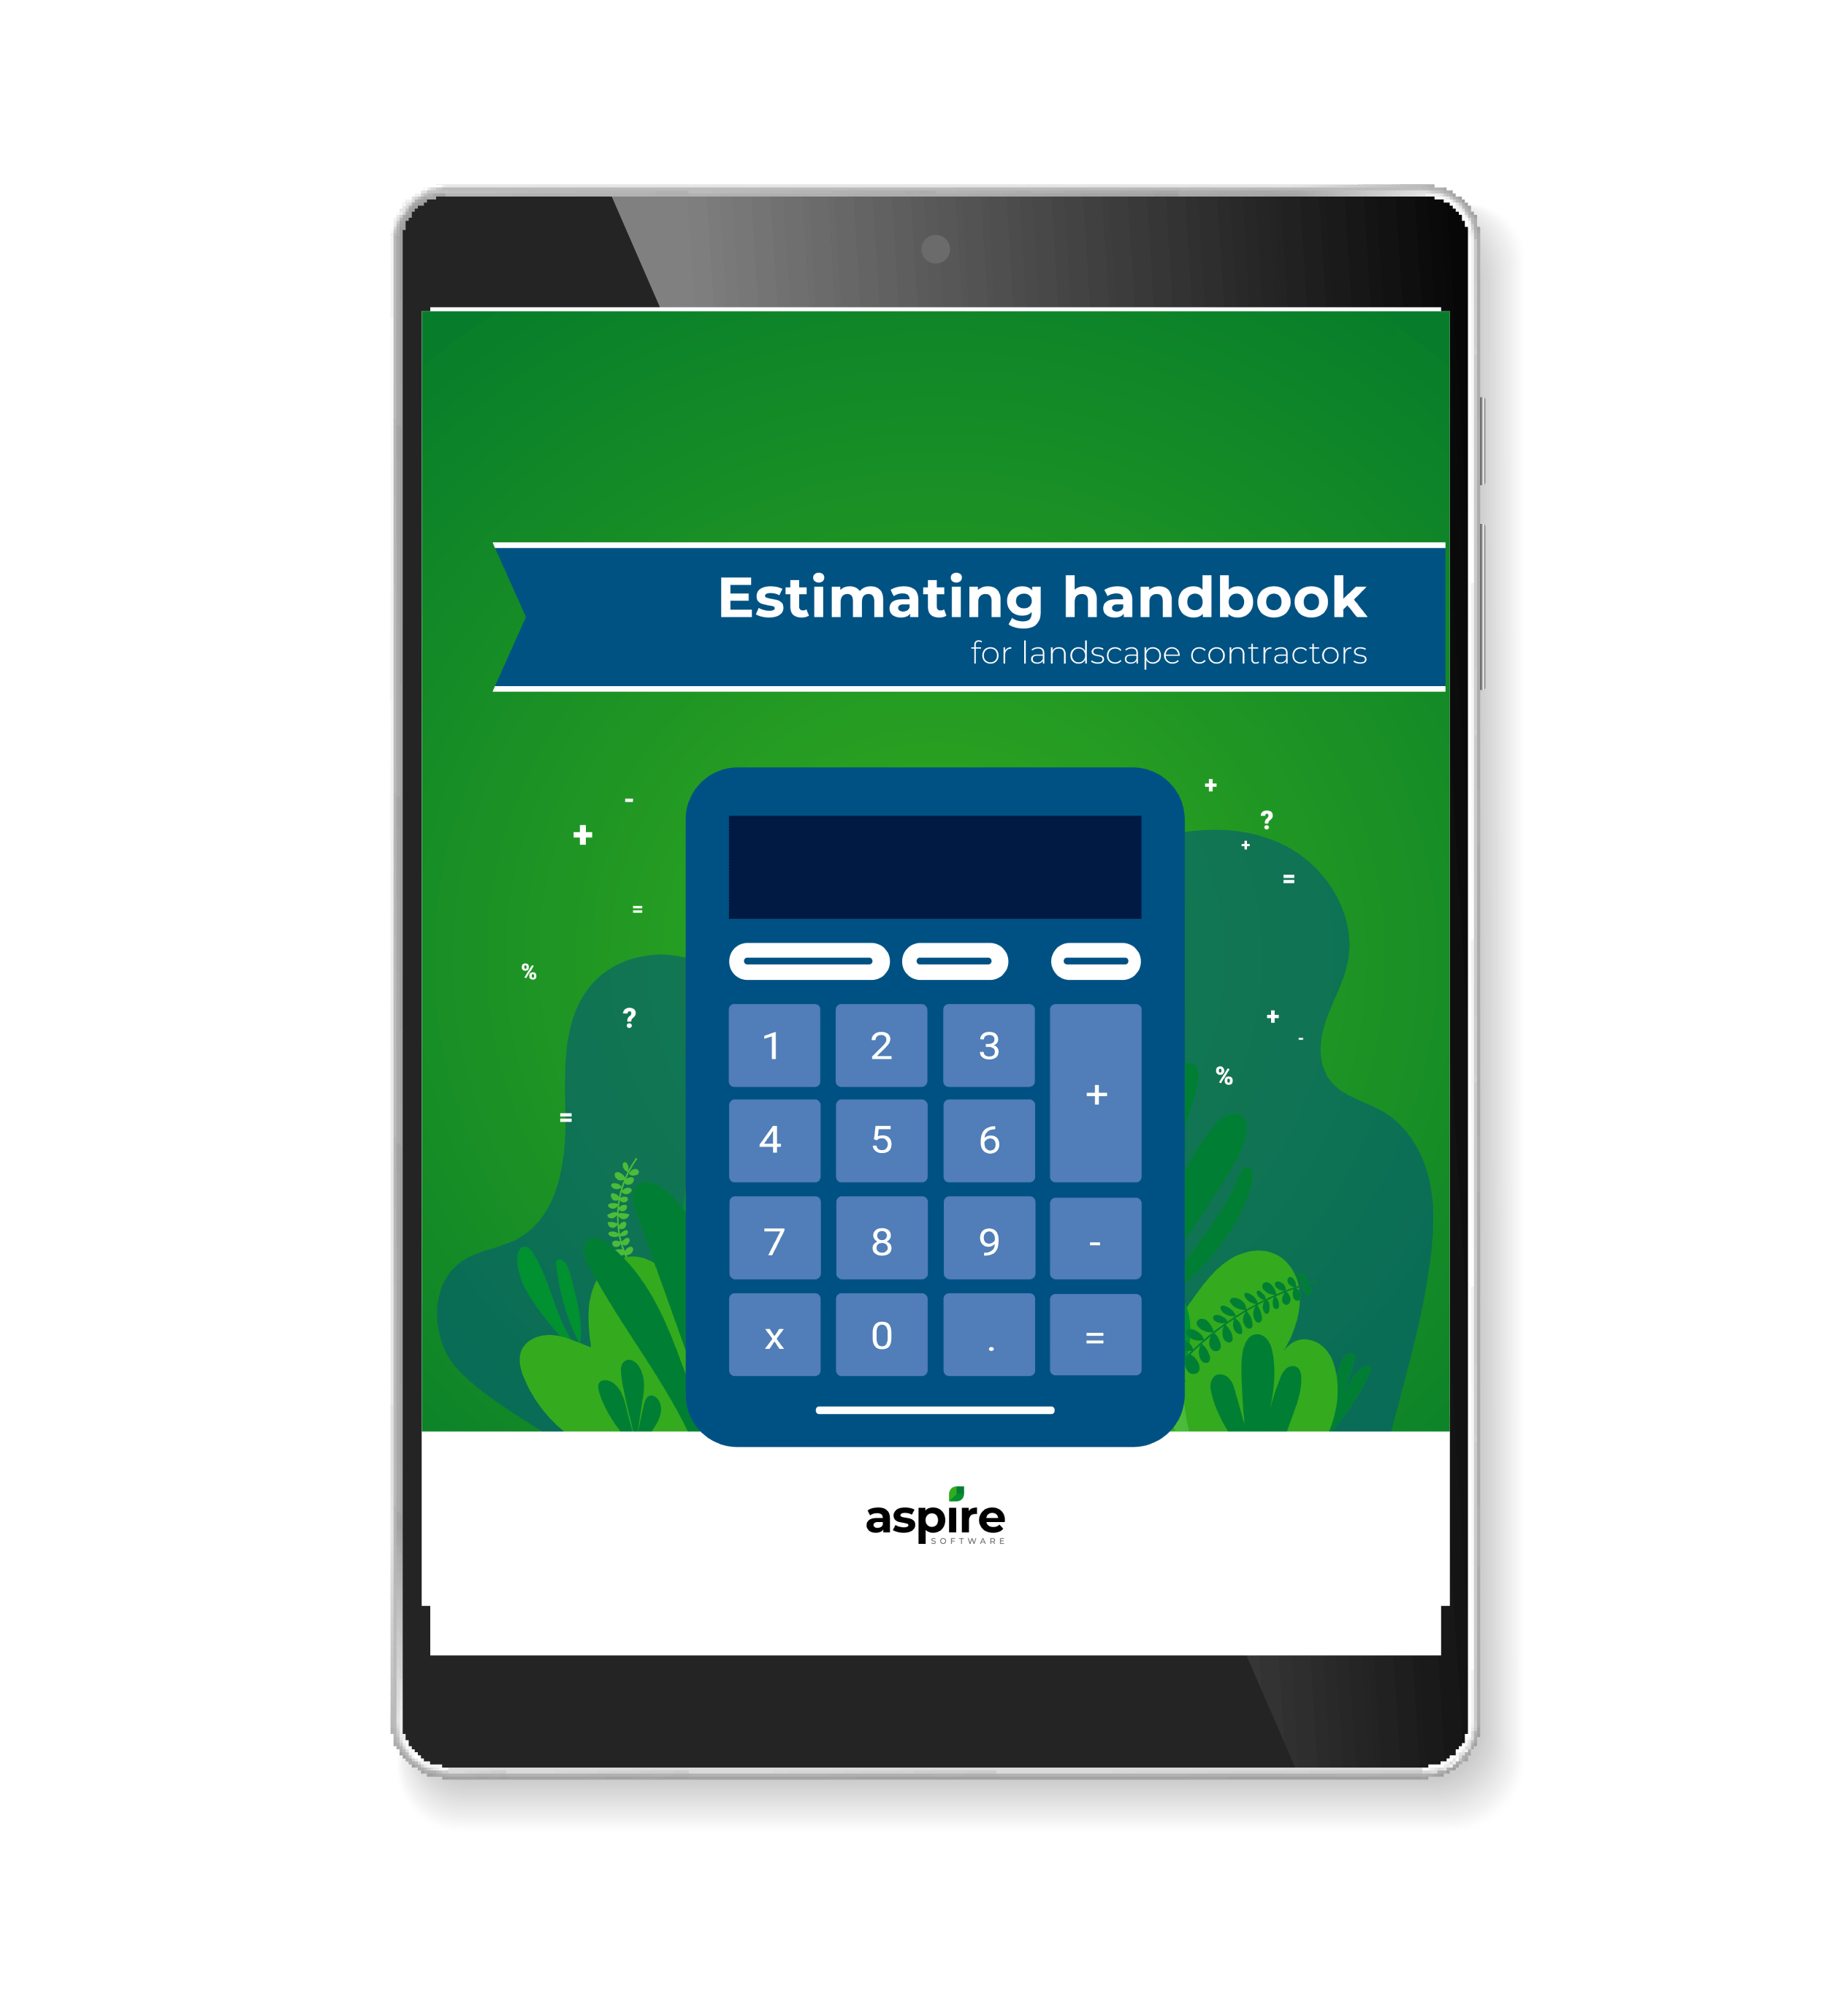 Estimating handbook for landscape contractors